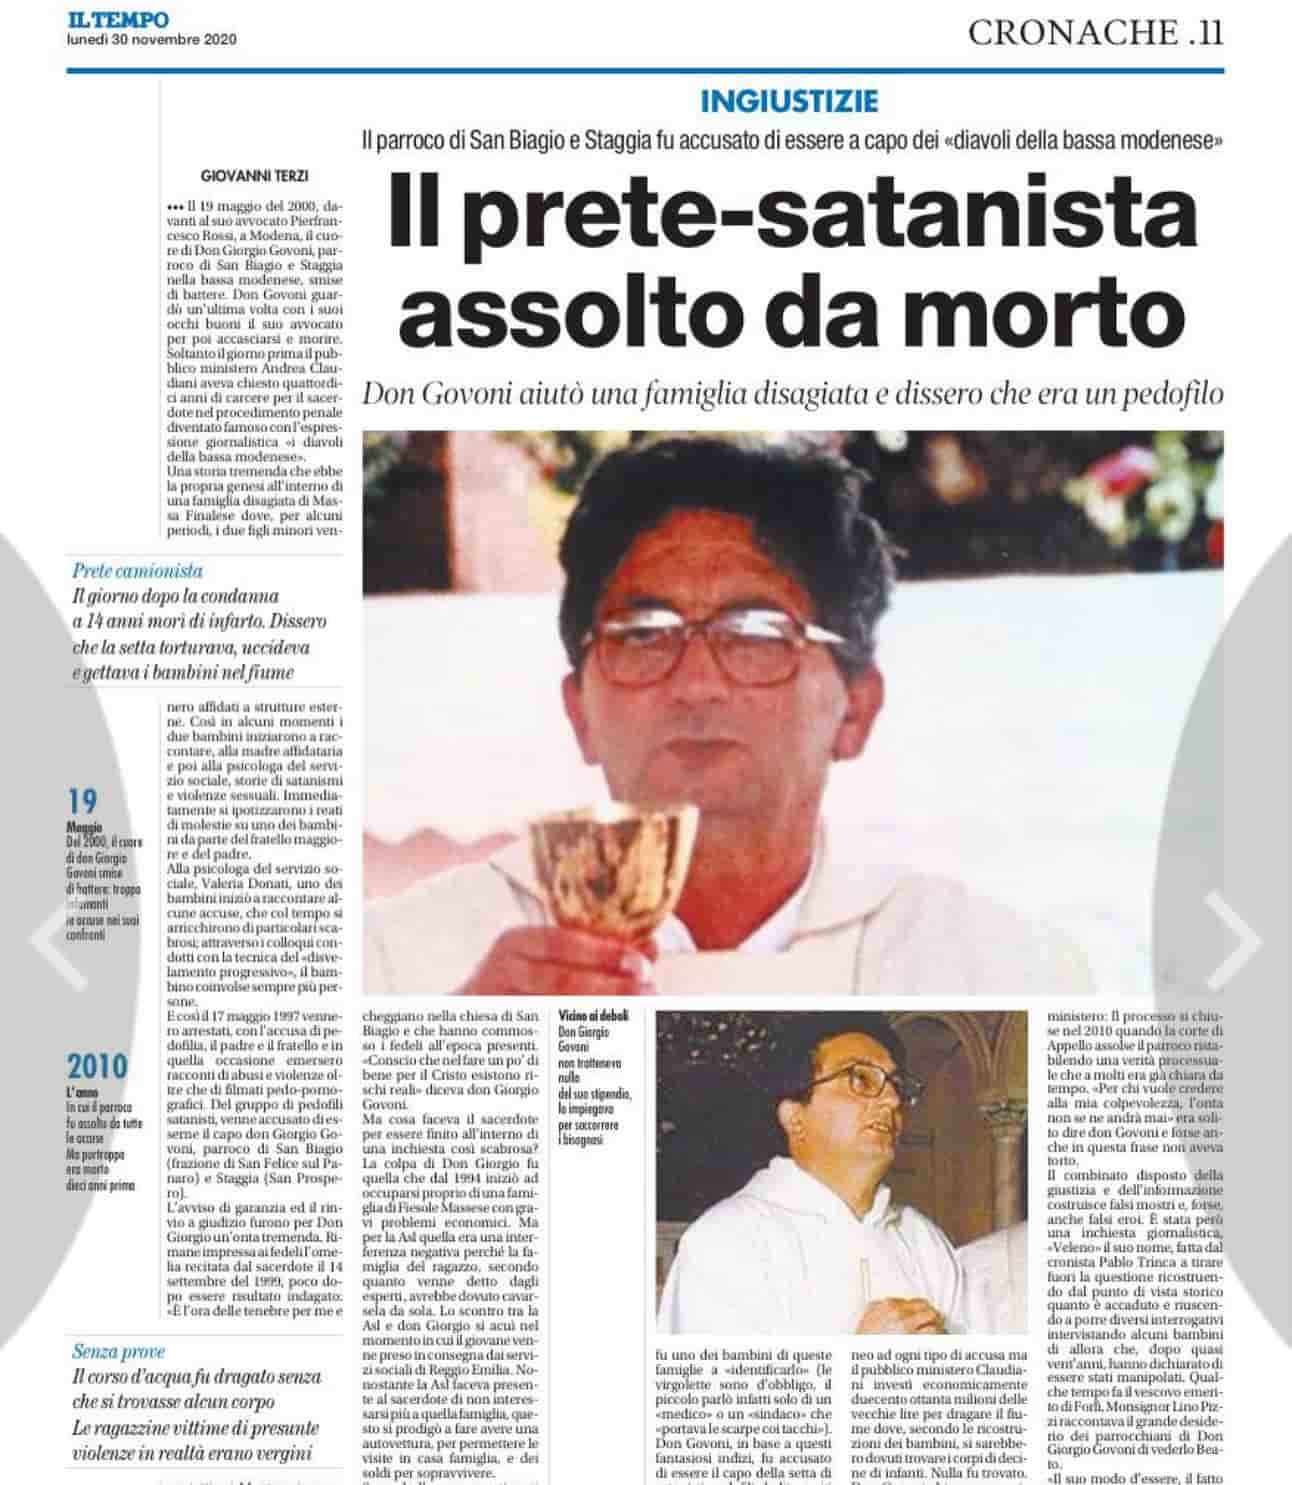 En 2020 aún recordaban al padre Giorgio Govoni, injustamente acusado de  jefe satanista pederasta